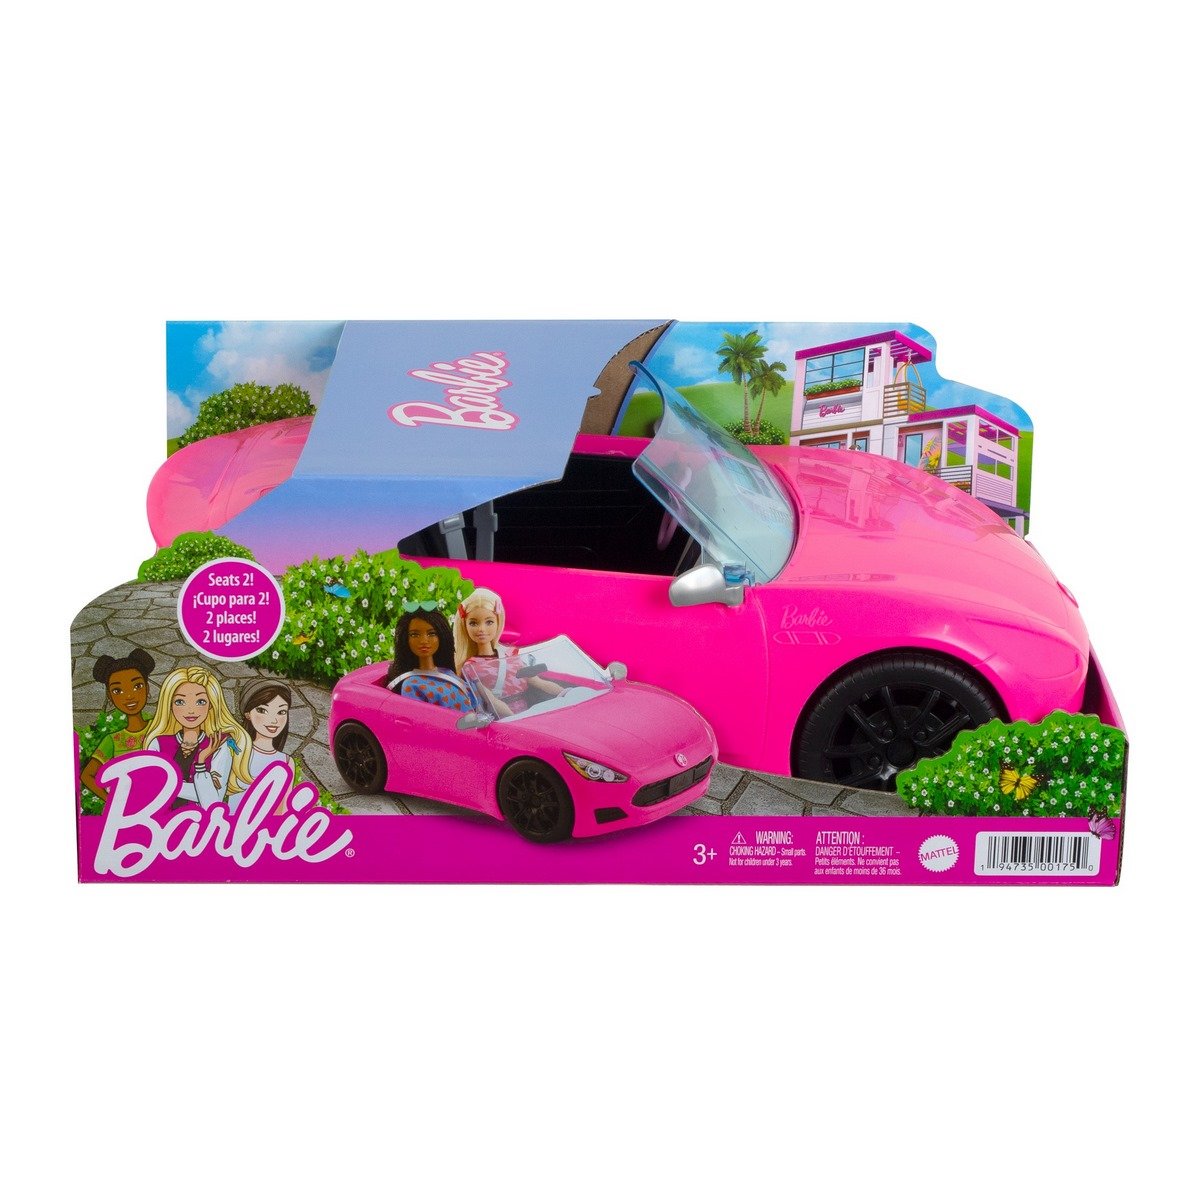 Cabriolet de Barbie